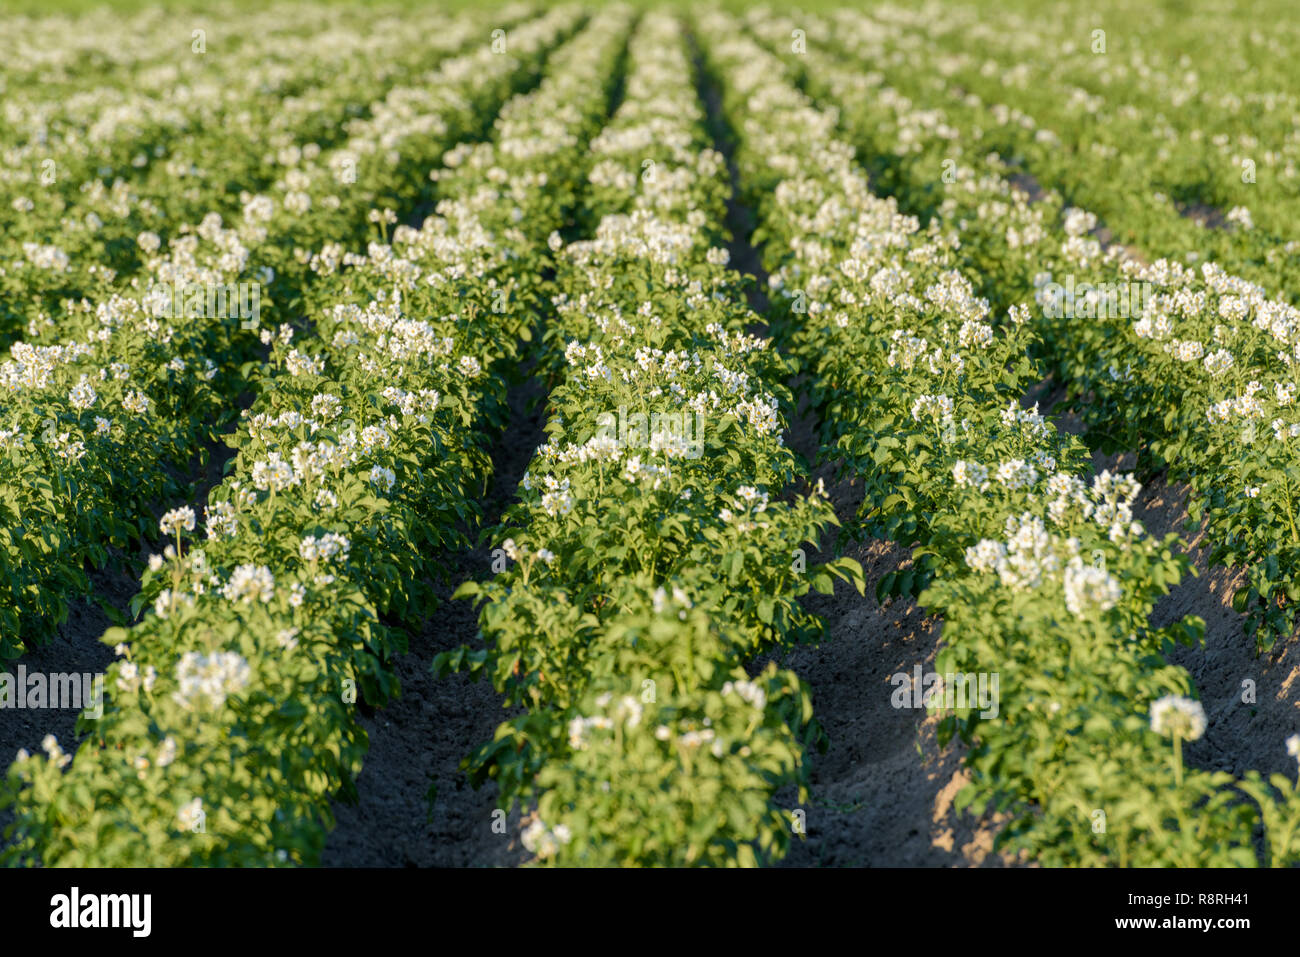 Ackerland mit üppig blühenden Pflanzen Kartoffel (Solanum tuberosum) wächst in den Zeilen im Sommer. Stockfoto